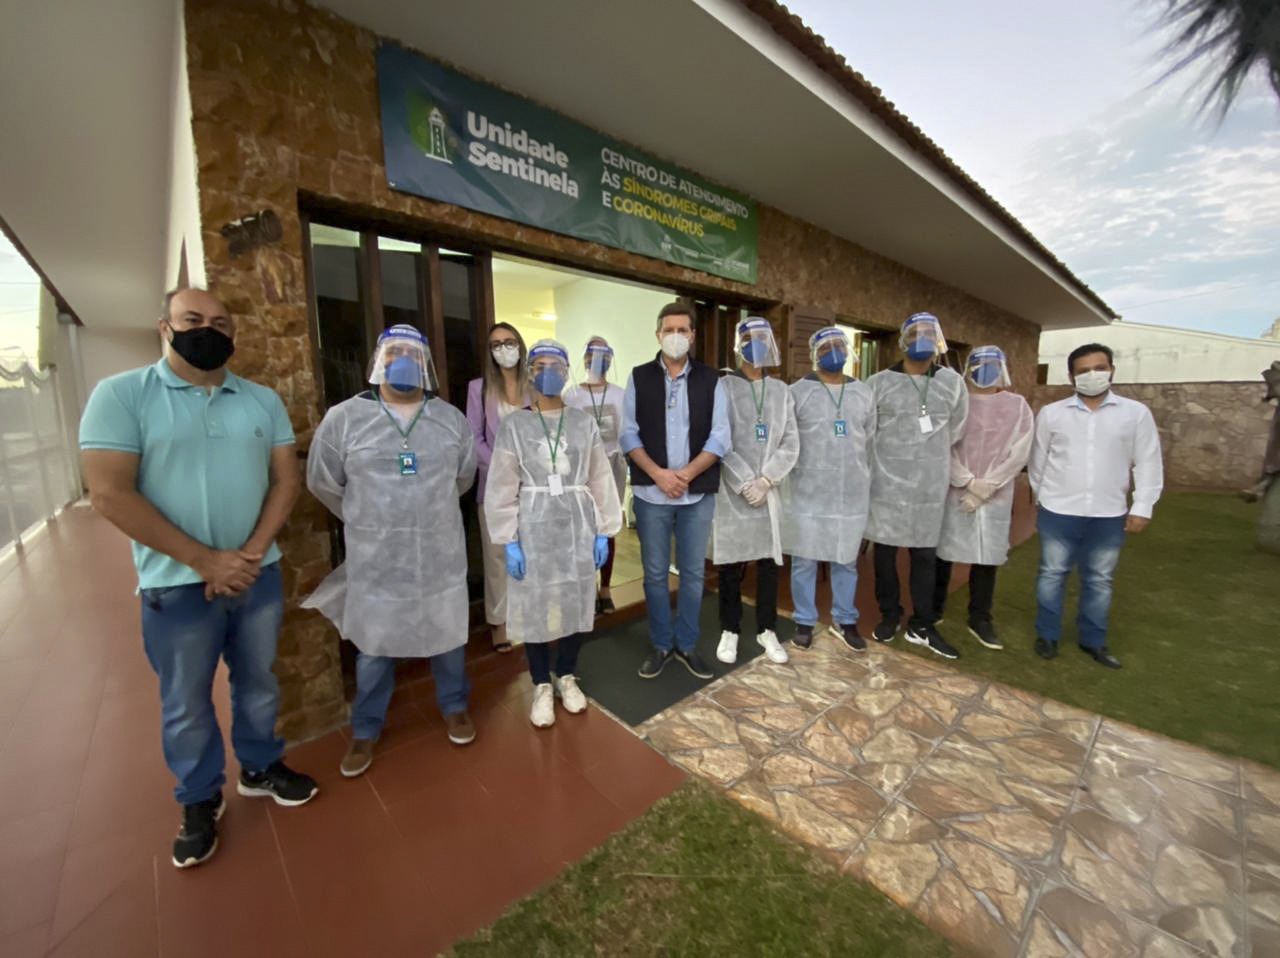 Unidade Sentinela: Prefeitura de Itararé (SP) inaugura centro de atendimento especializado para tratamento de covid-19